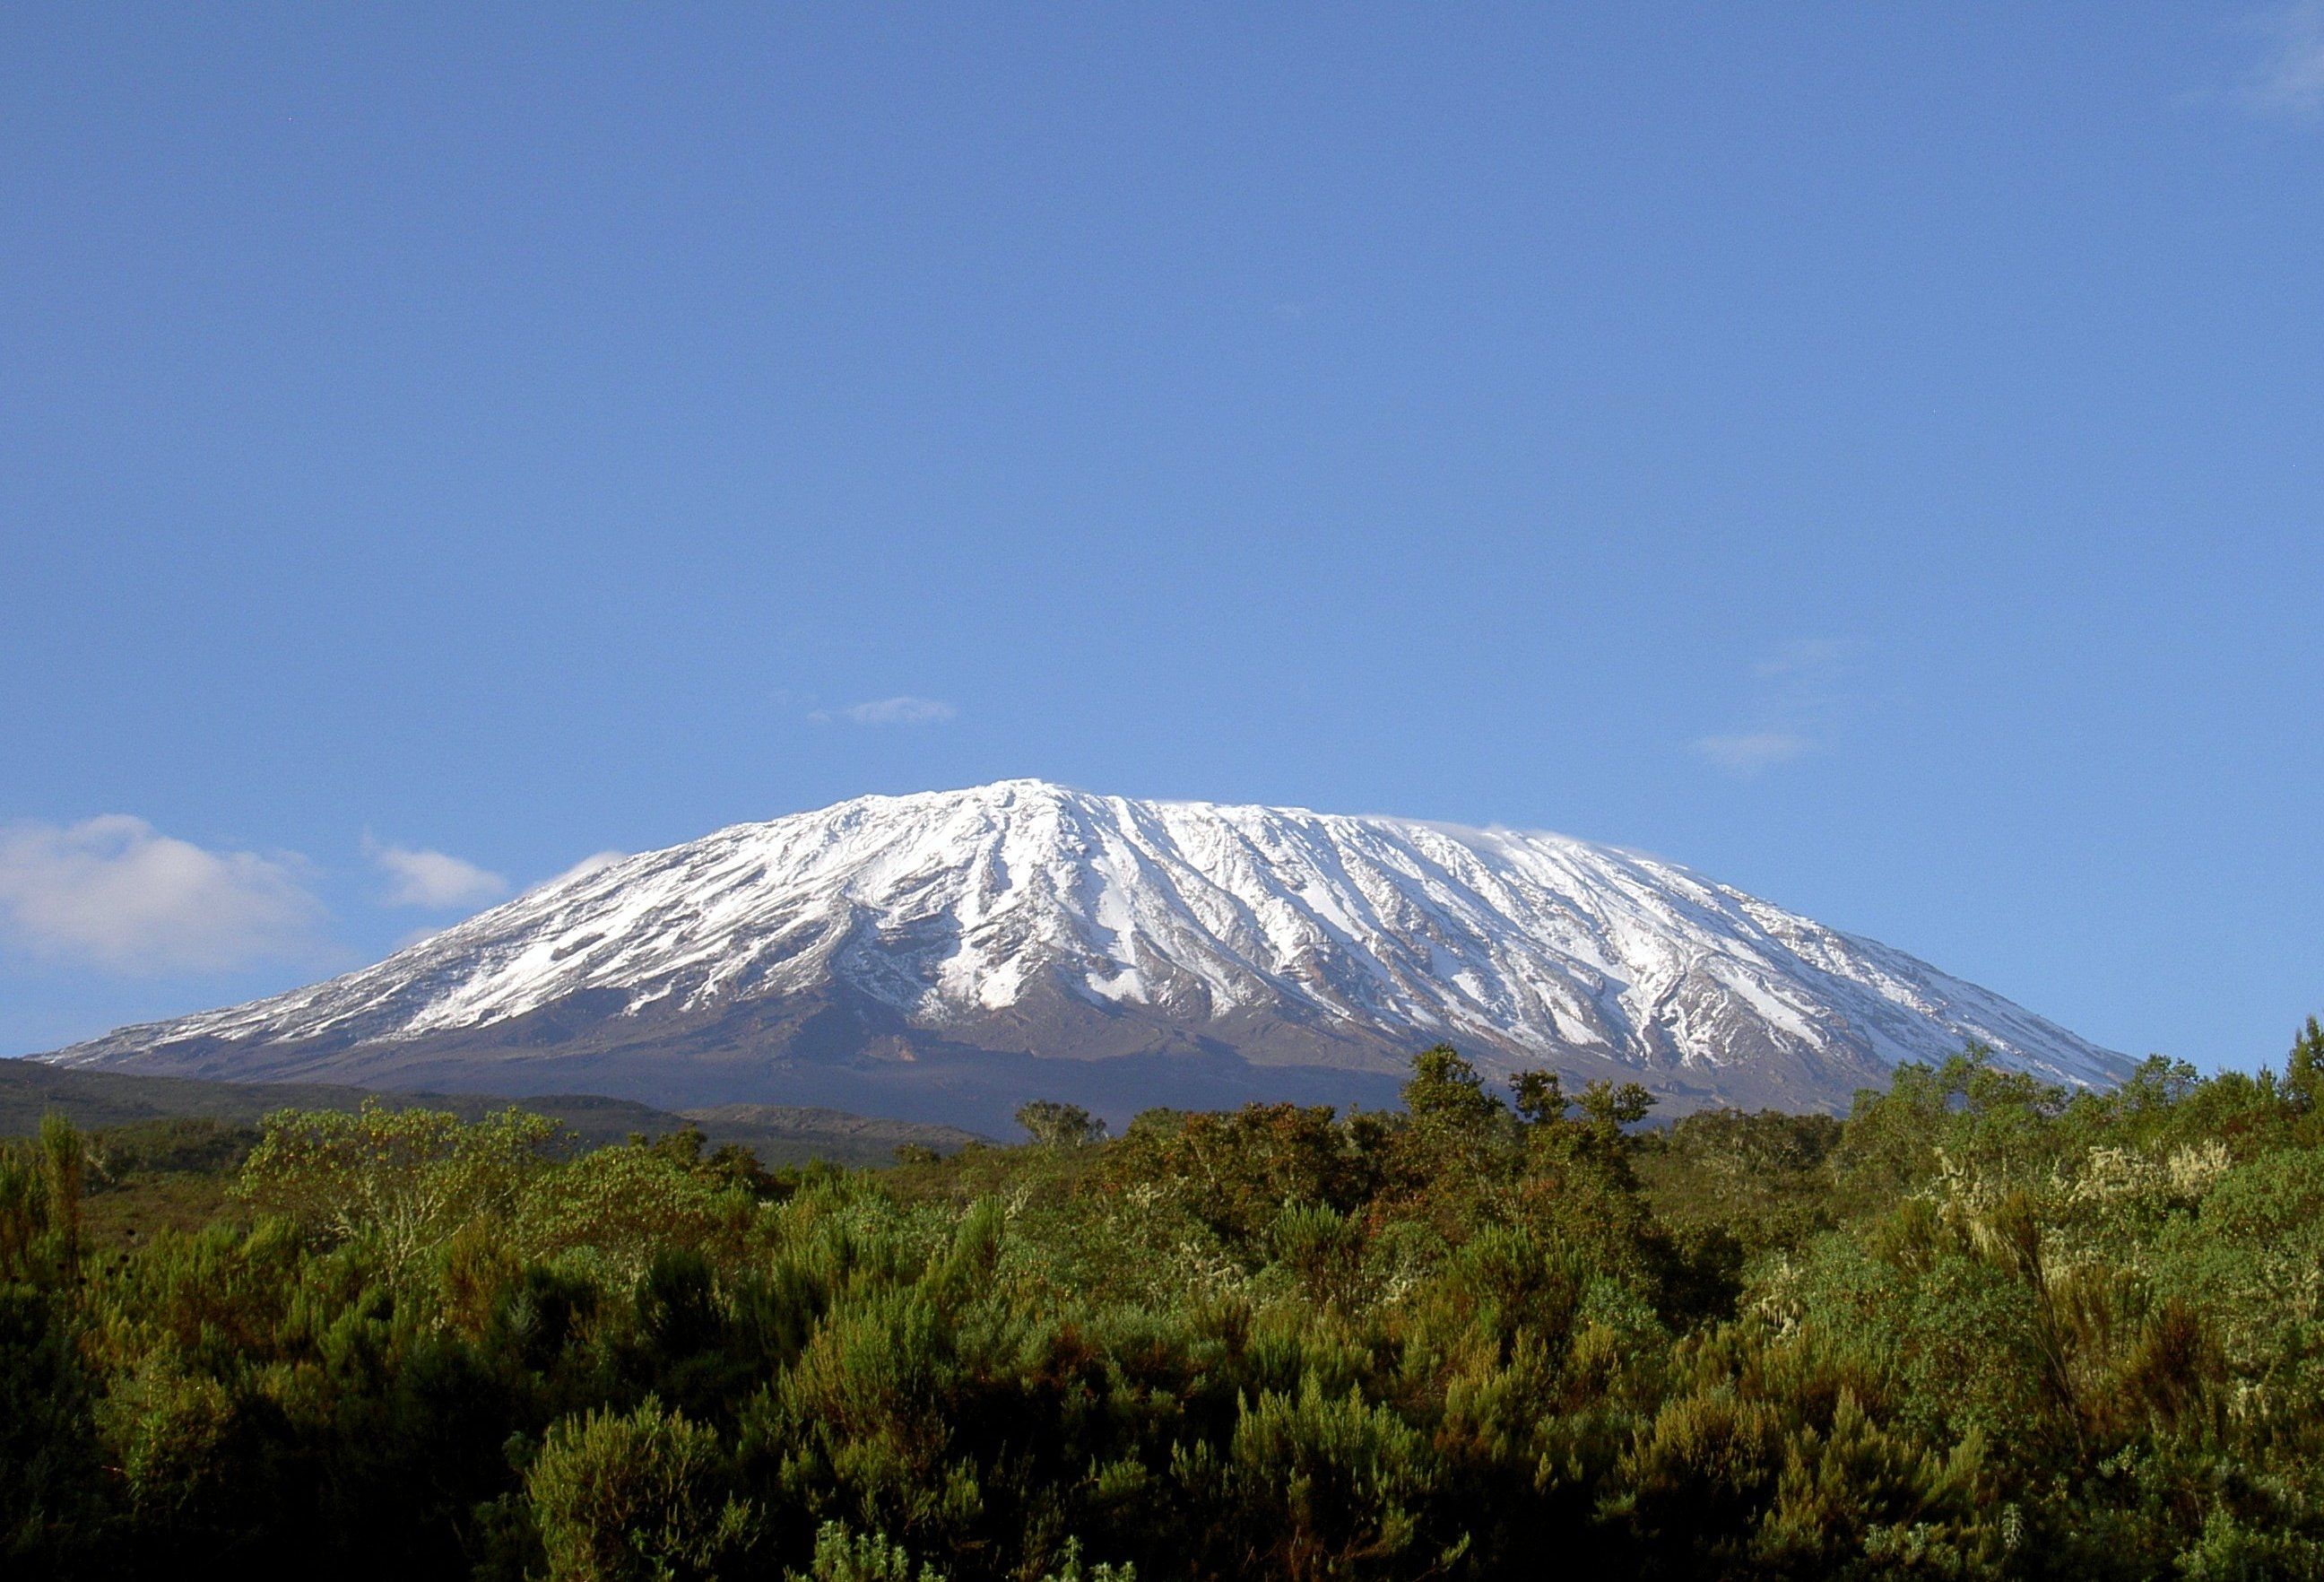 Photos of Mount Kilimanjaro